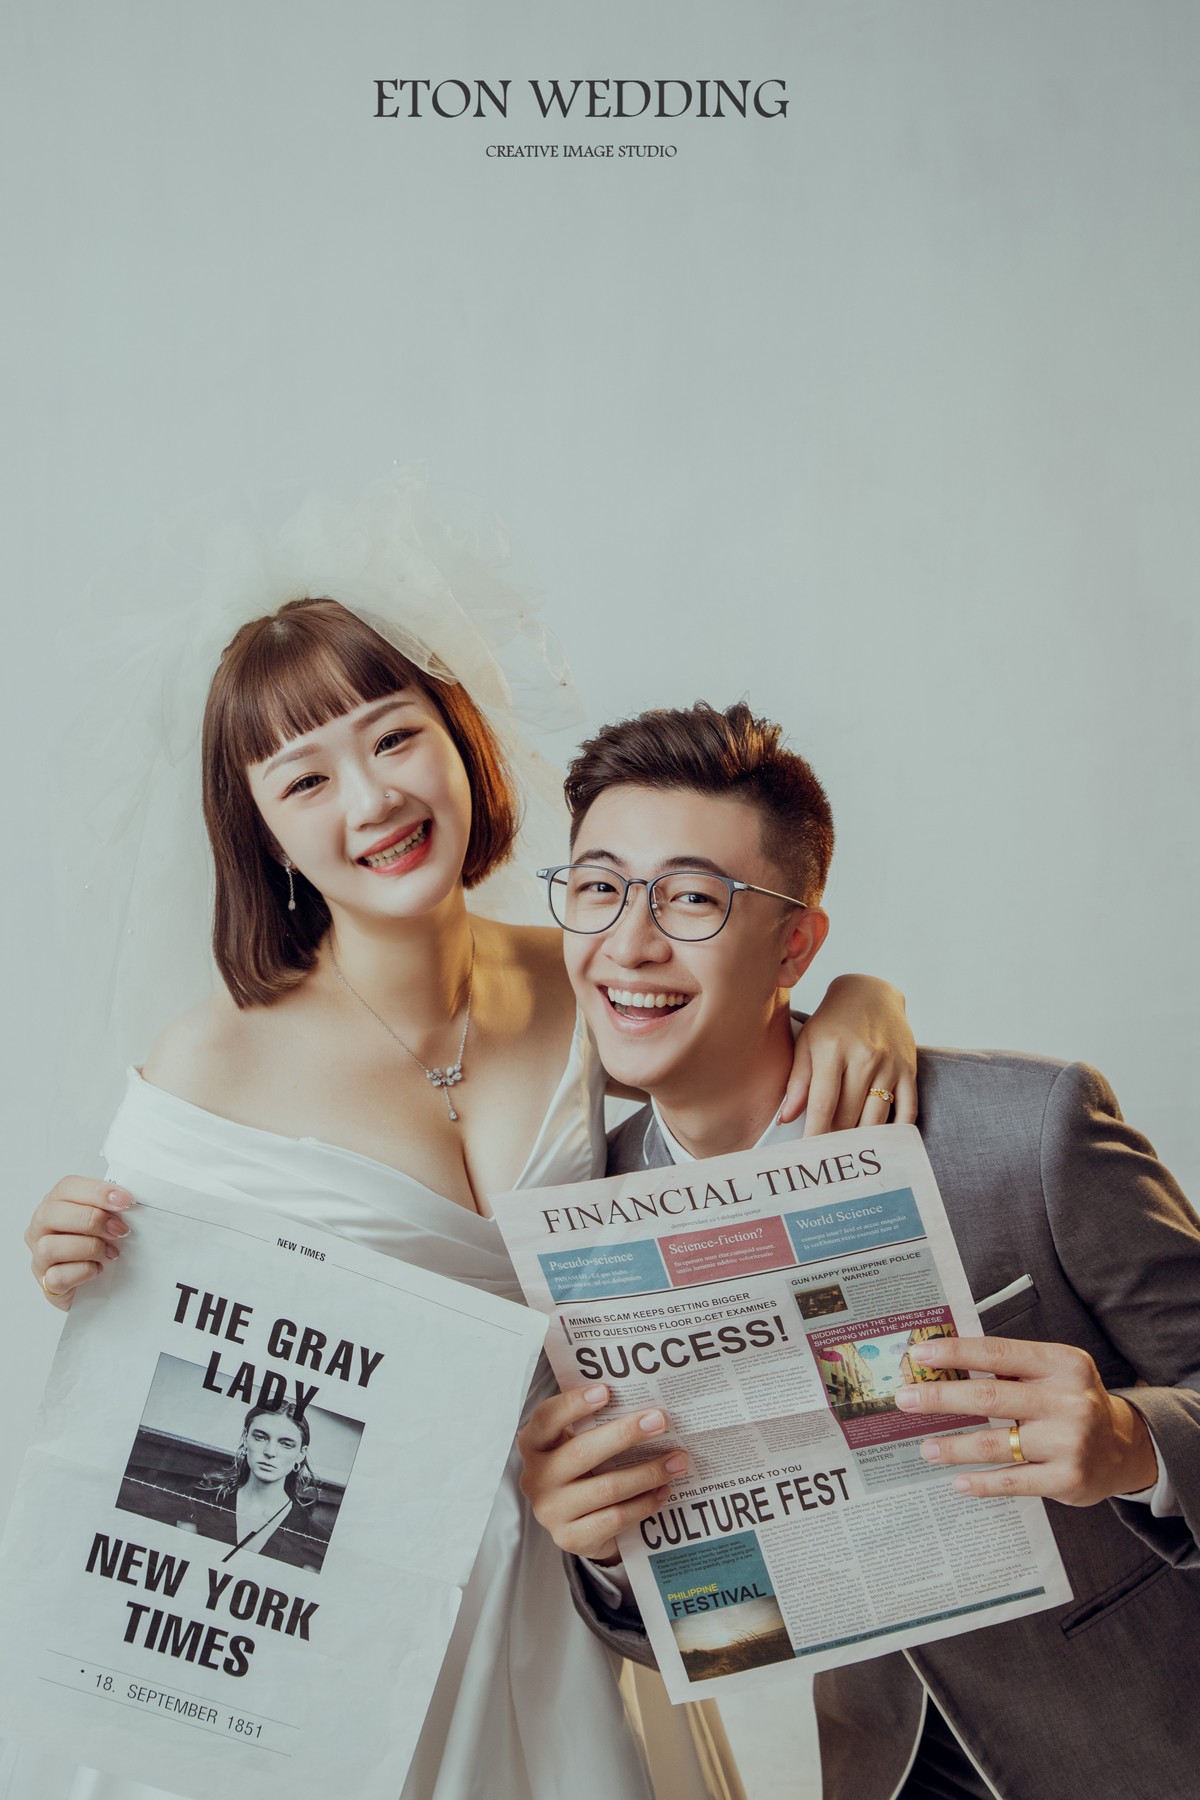 一個短髮可愛新娘跟新郎手上拿著報紙，面對鏡頭燦笑的可愛婚紗照